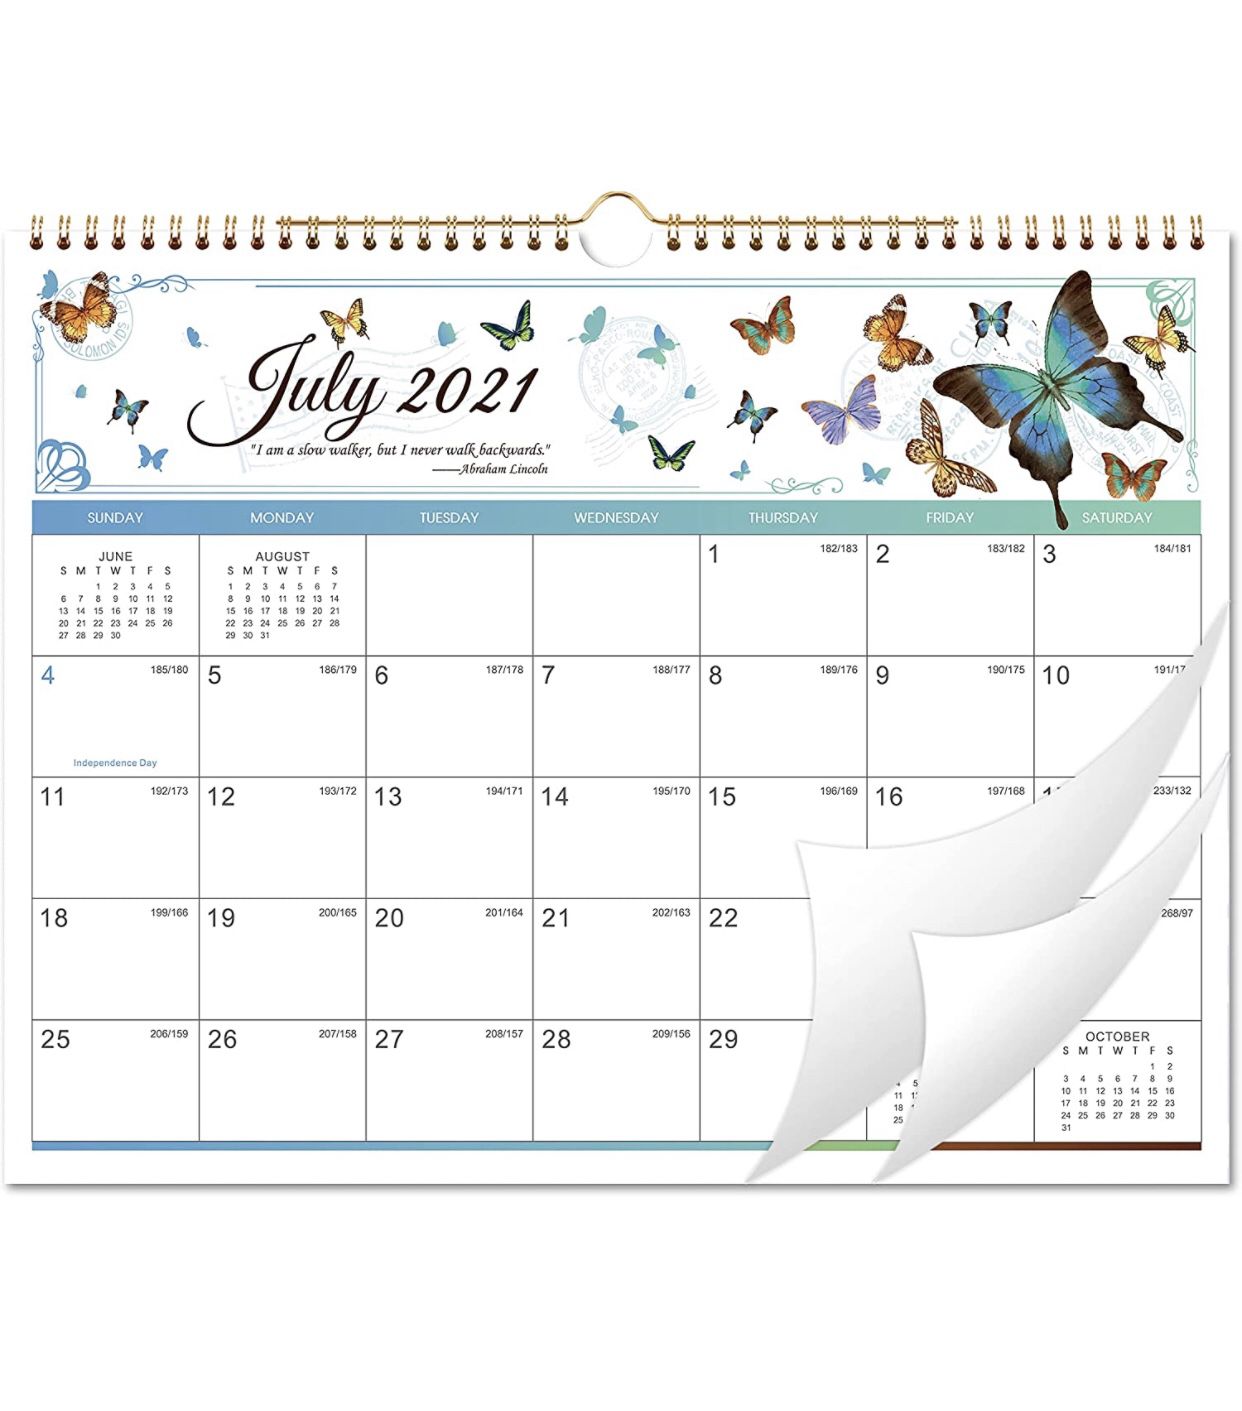 Monthly Wall Calendar 2021-2022 from Jul 2021 - Dec 2022